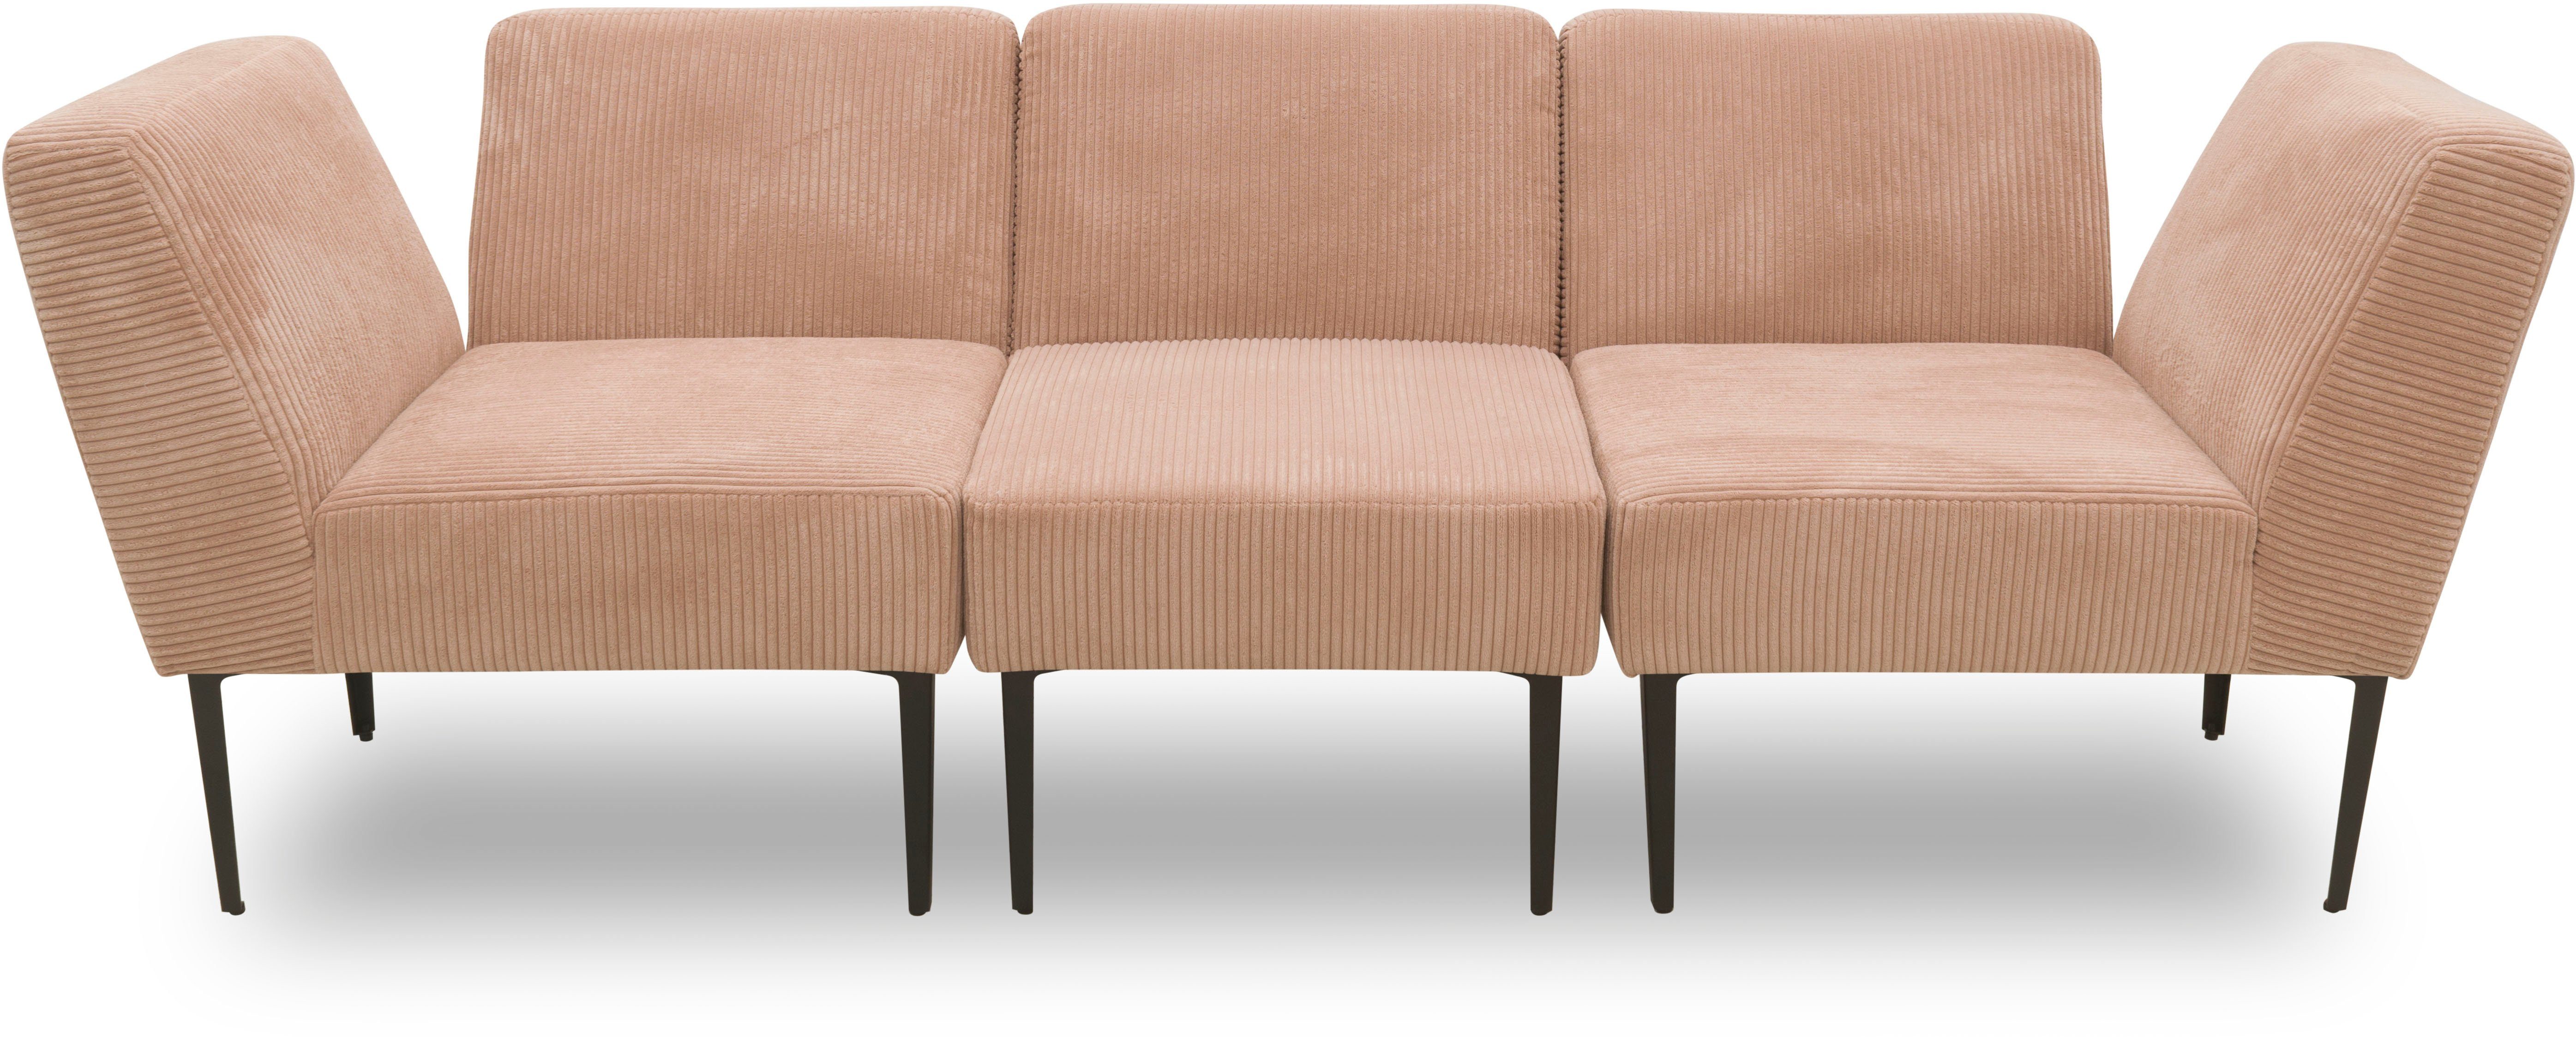 DOMO collection Sessel 700010 Lieferzeit nur 2 Wochen, auch einzeln stellbar, für individuelle Zusammenstellung eines persönlichen Sofas, Cord-Bezug